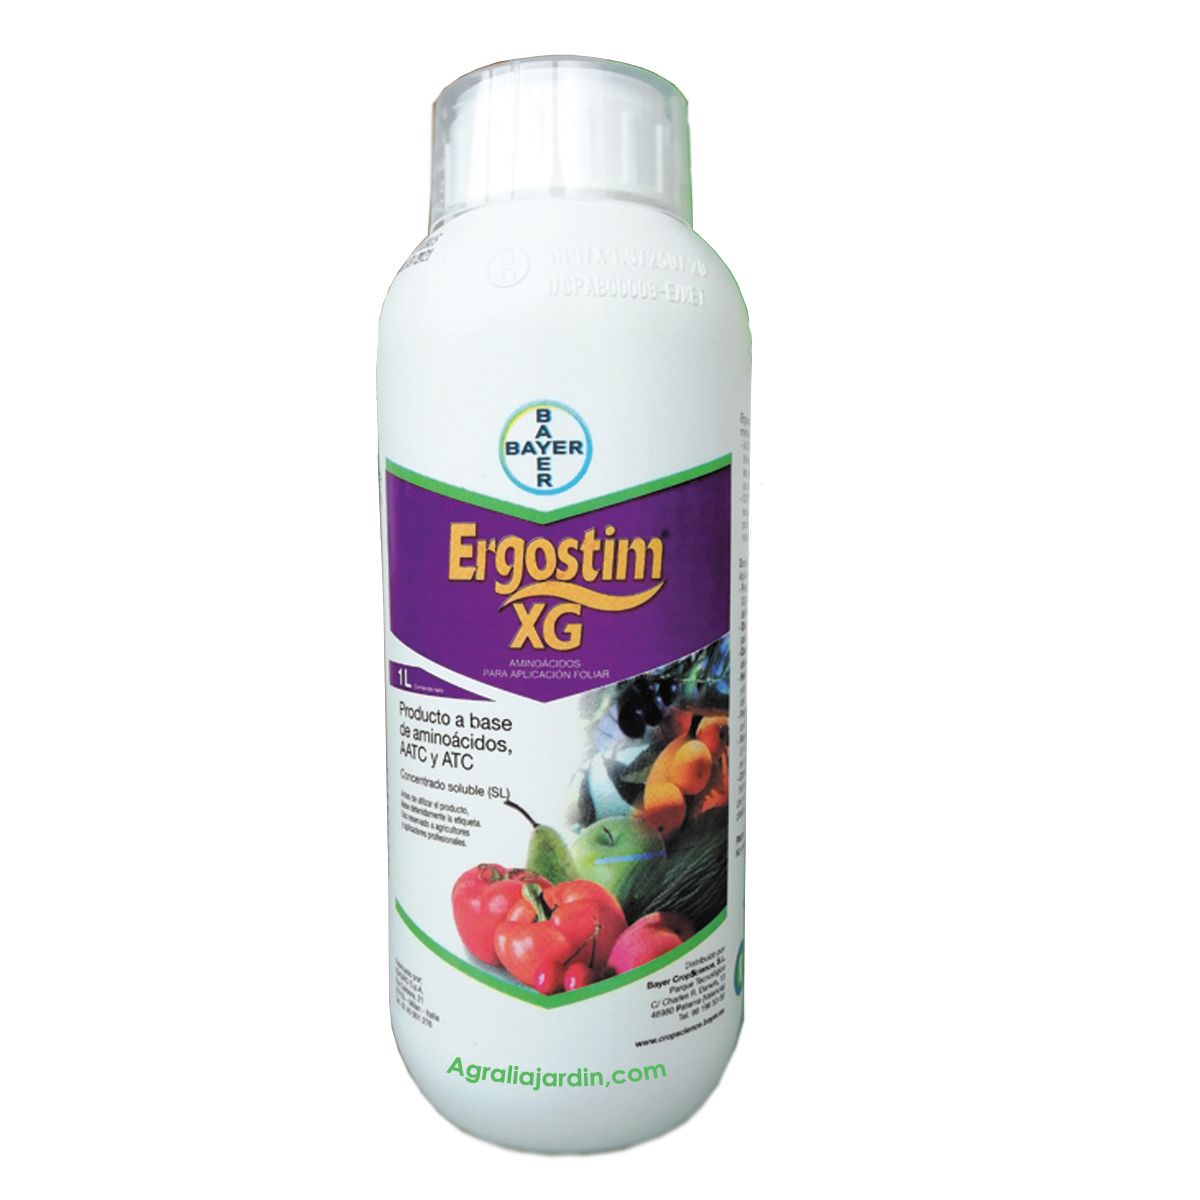 Ergostim-Bayer-1-L-agraliaj